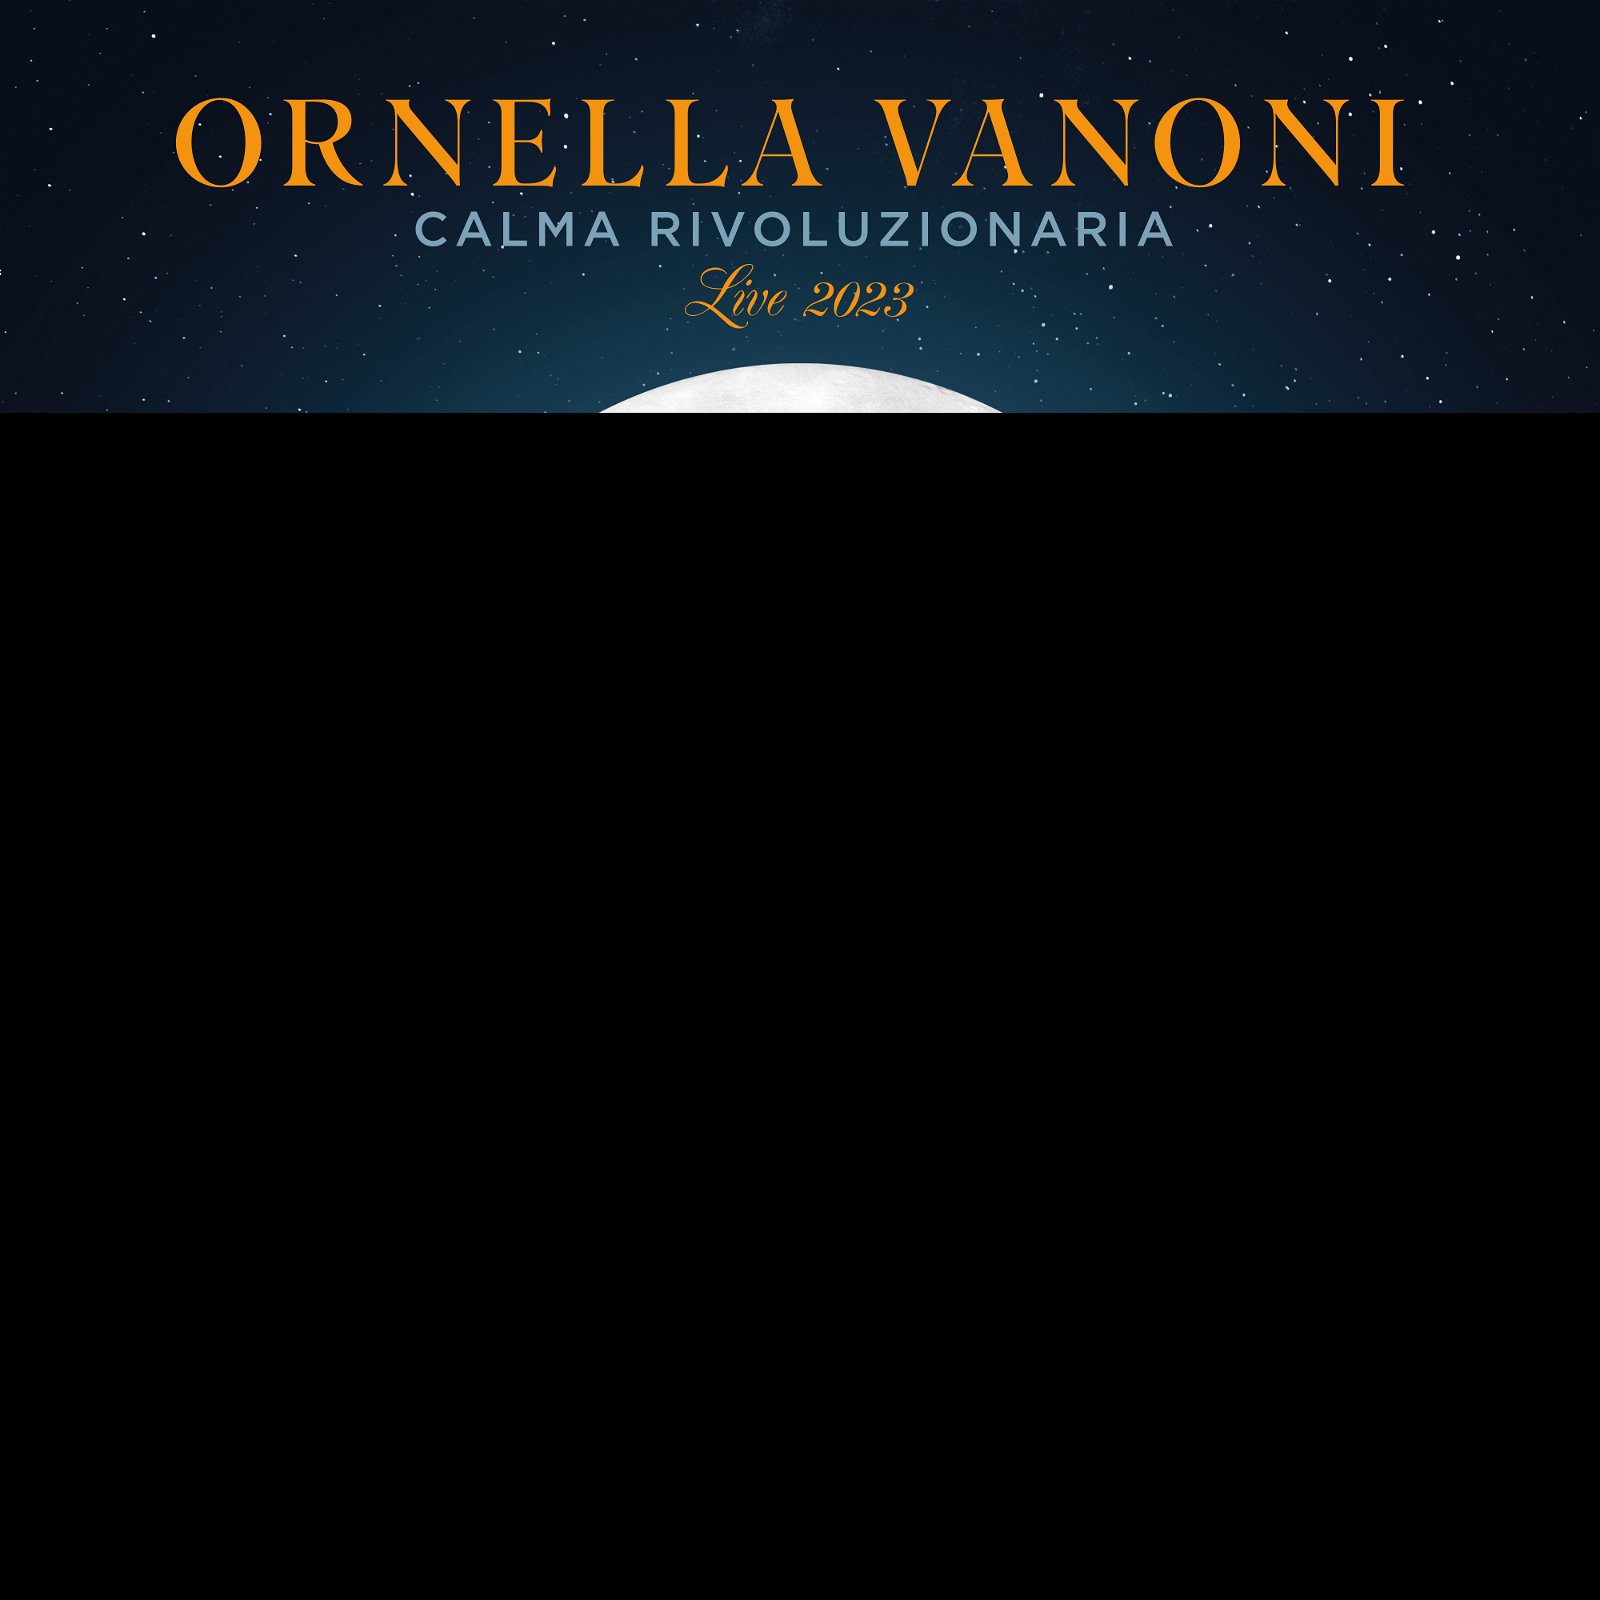 CD Shop - ORNELLA, VANONI CALMA RIVOLUZIONARIA (LIVE 2023)